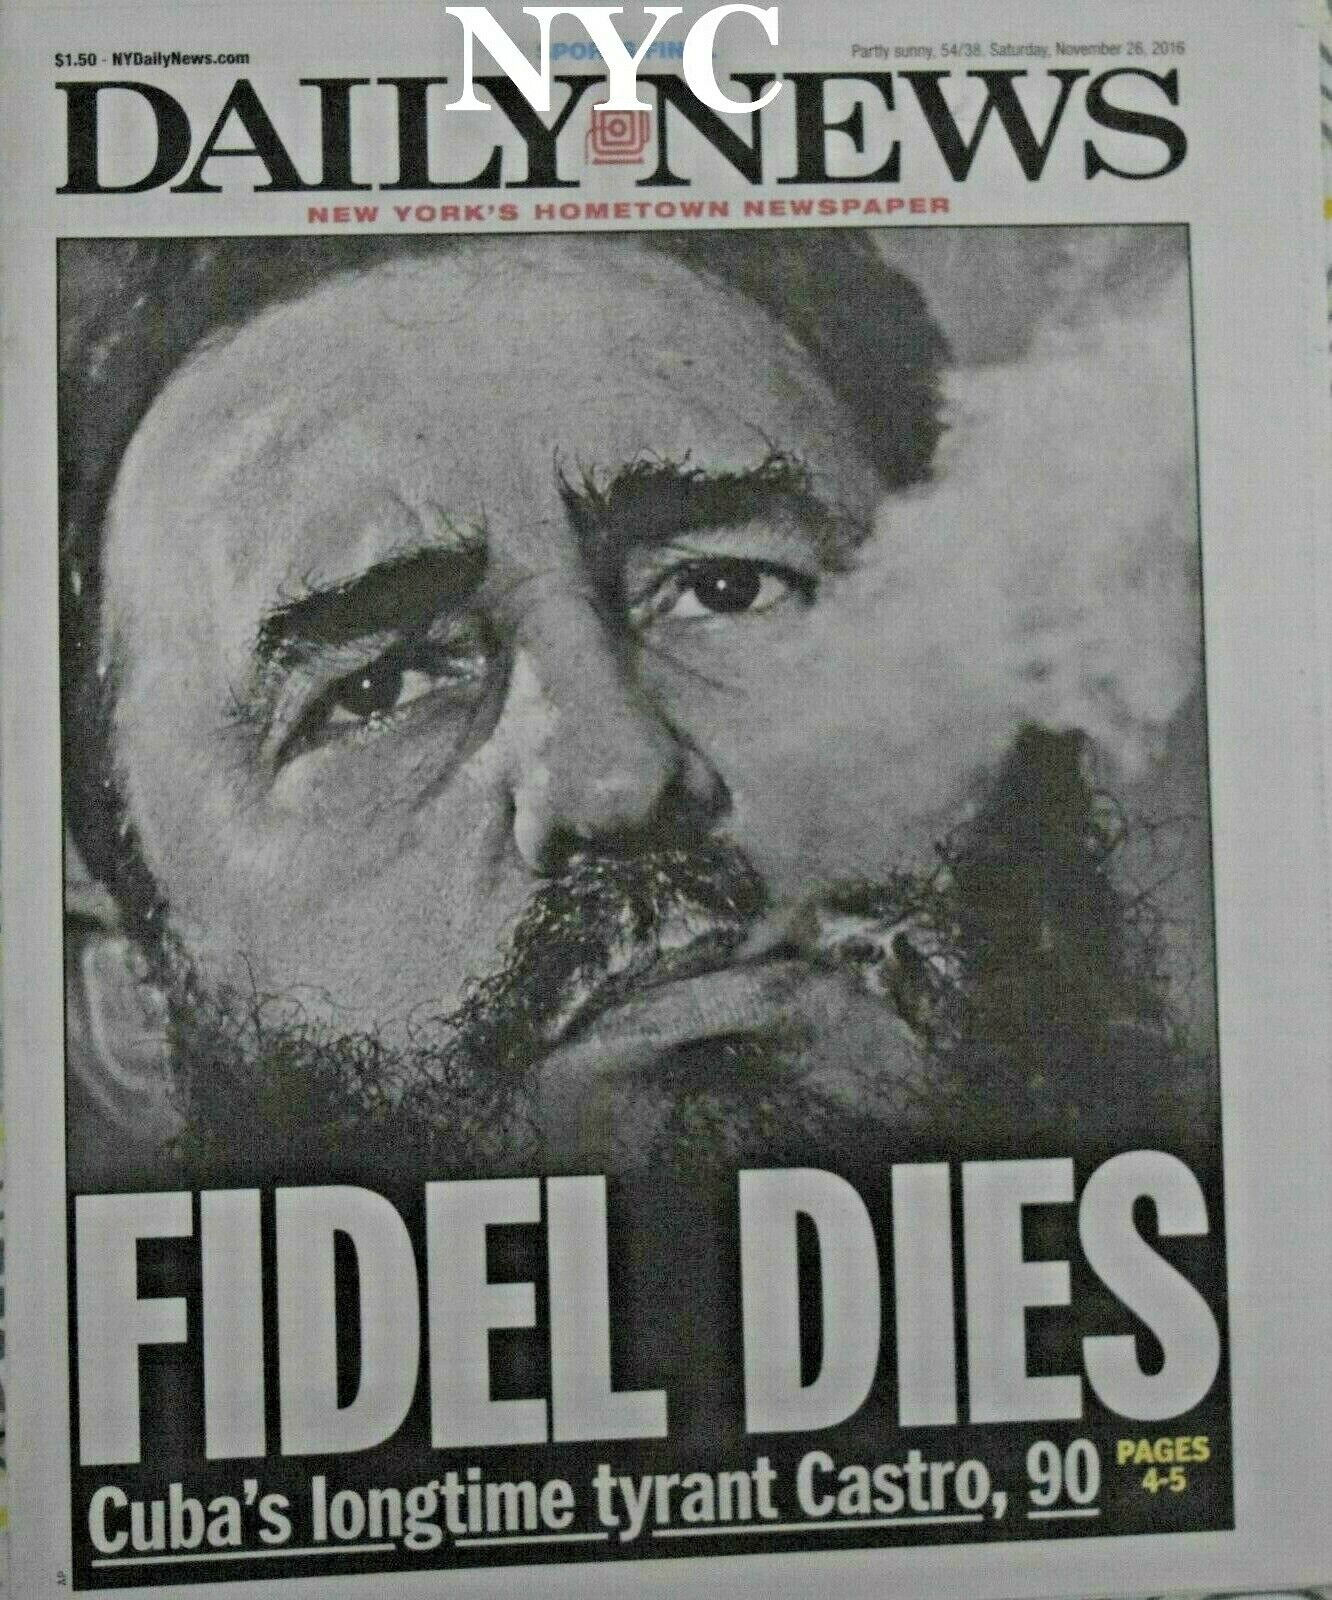 Fidel Castro Dead Ny Daily News November 26 2016 🔥